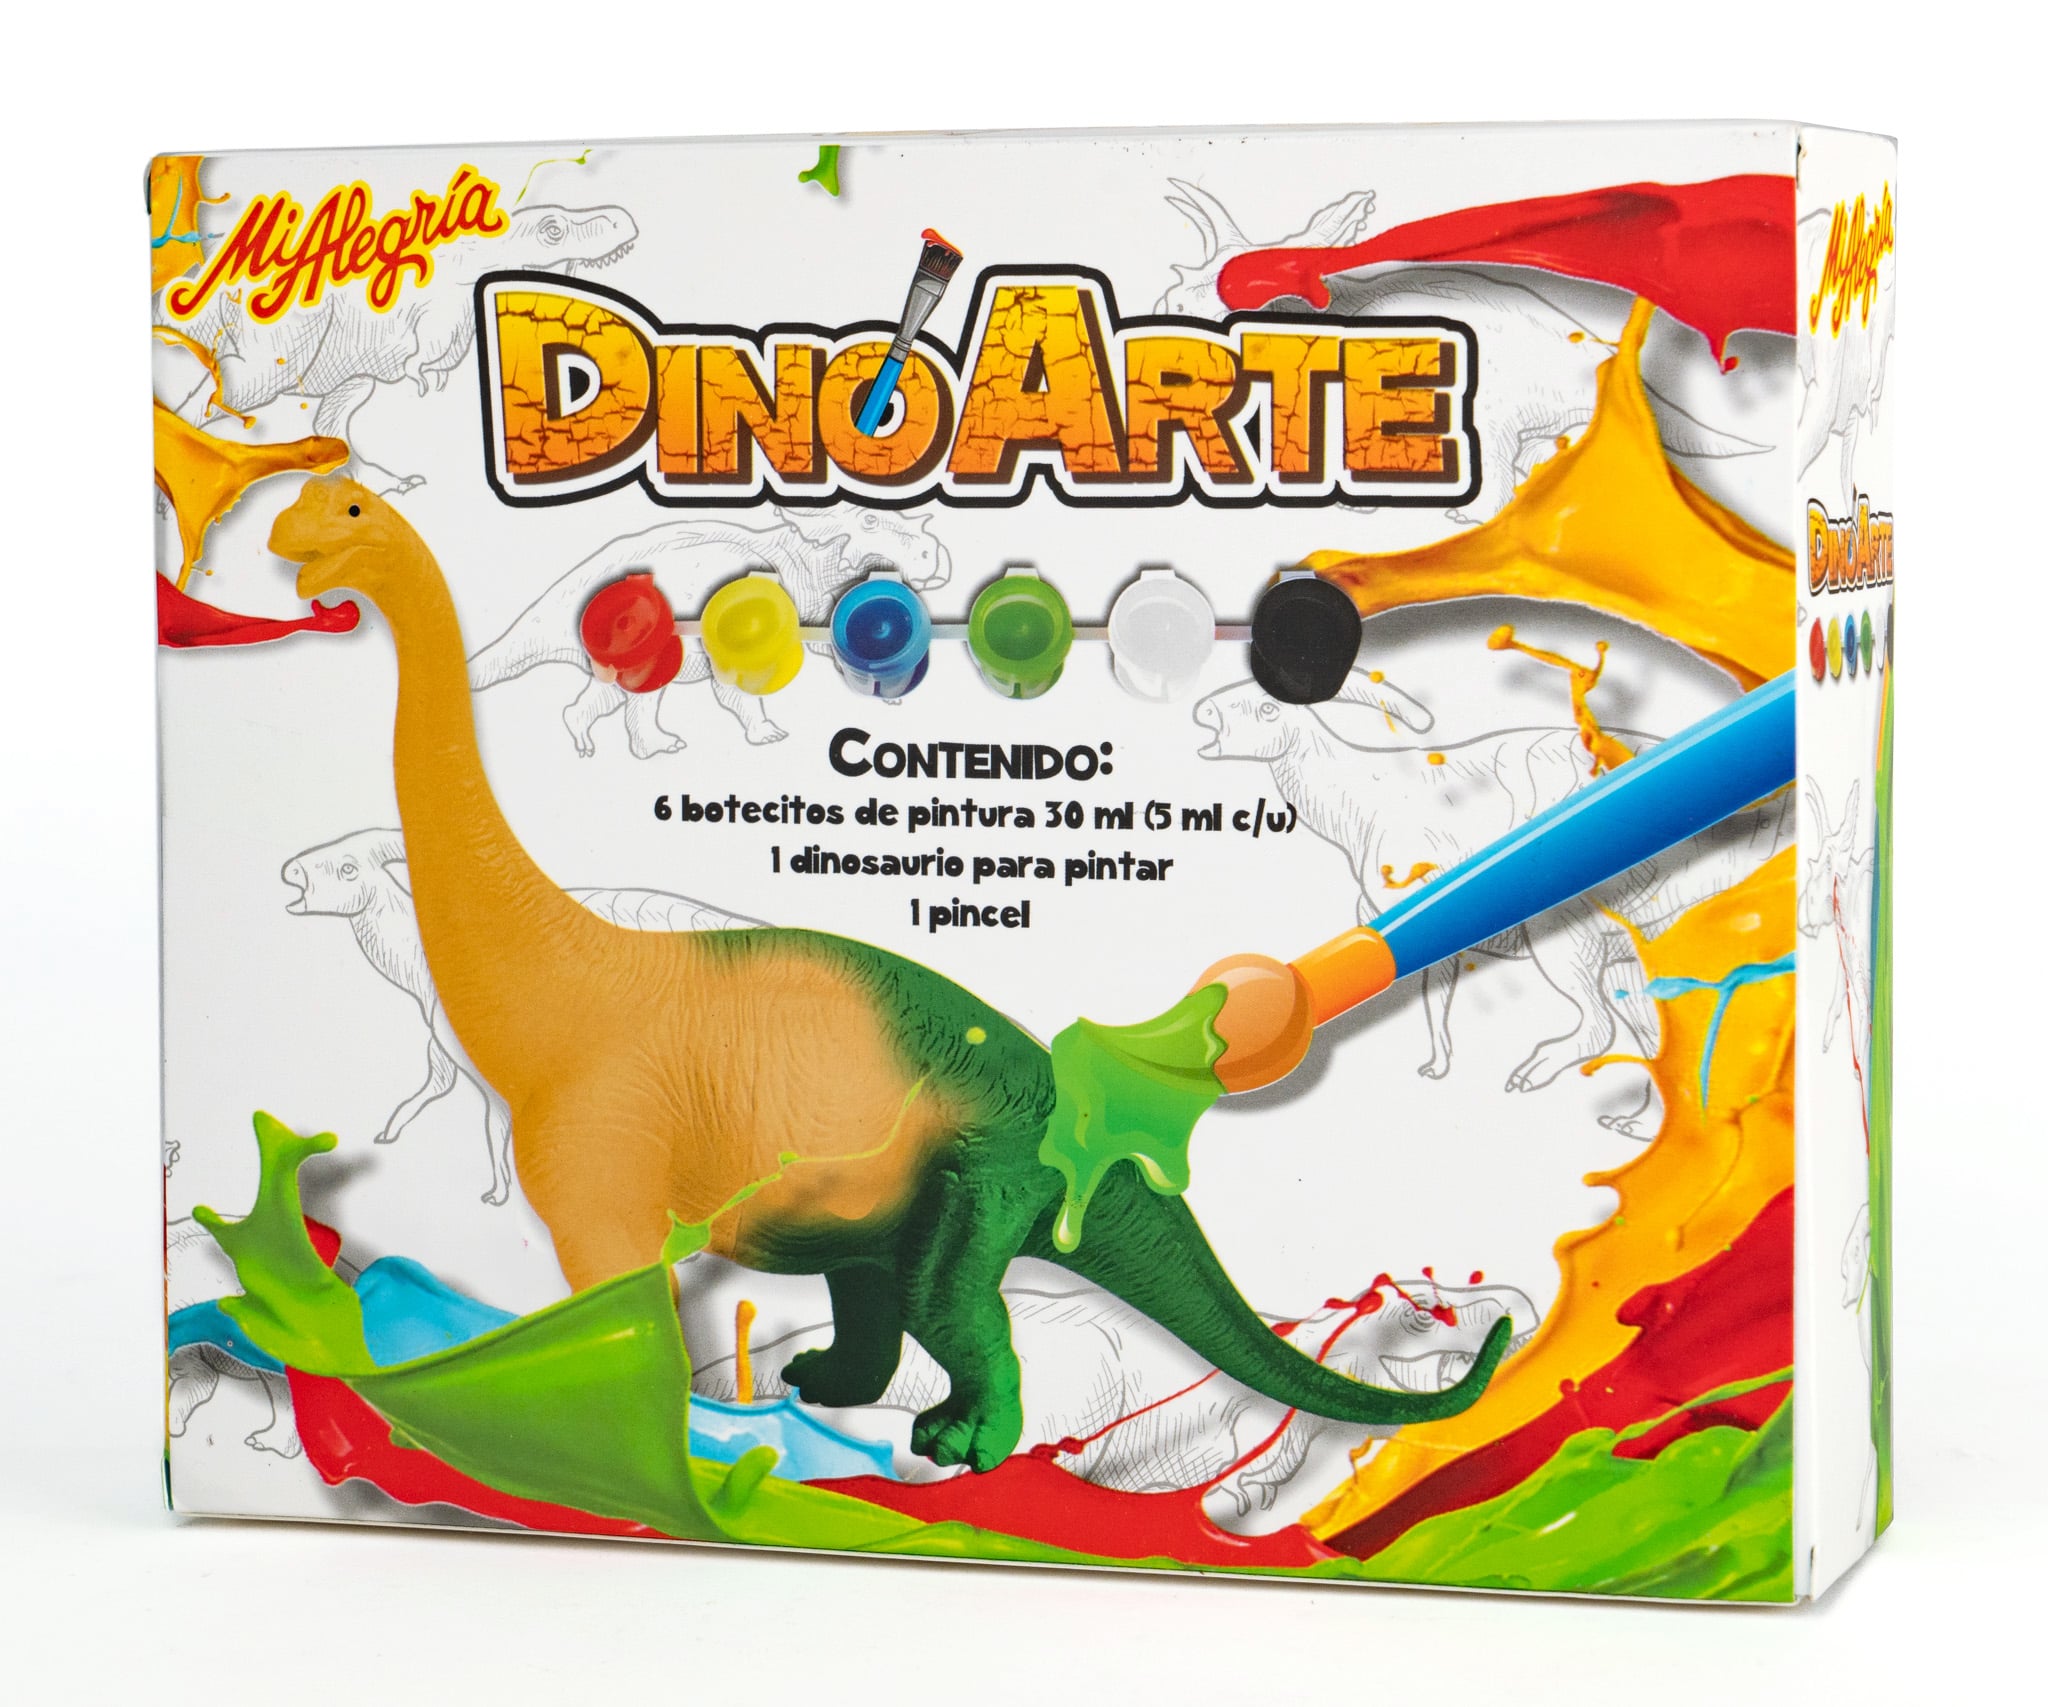 Dino Arte. Pinta a tu dinosaurio favorito y lleva a volar a tu imaginación. ¿Los dinosaurios tienen plumas? Tú lo decides con Dino Arte Mi Alegría. Dinosaurio: Velociraptor